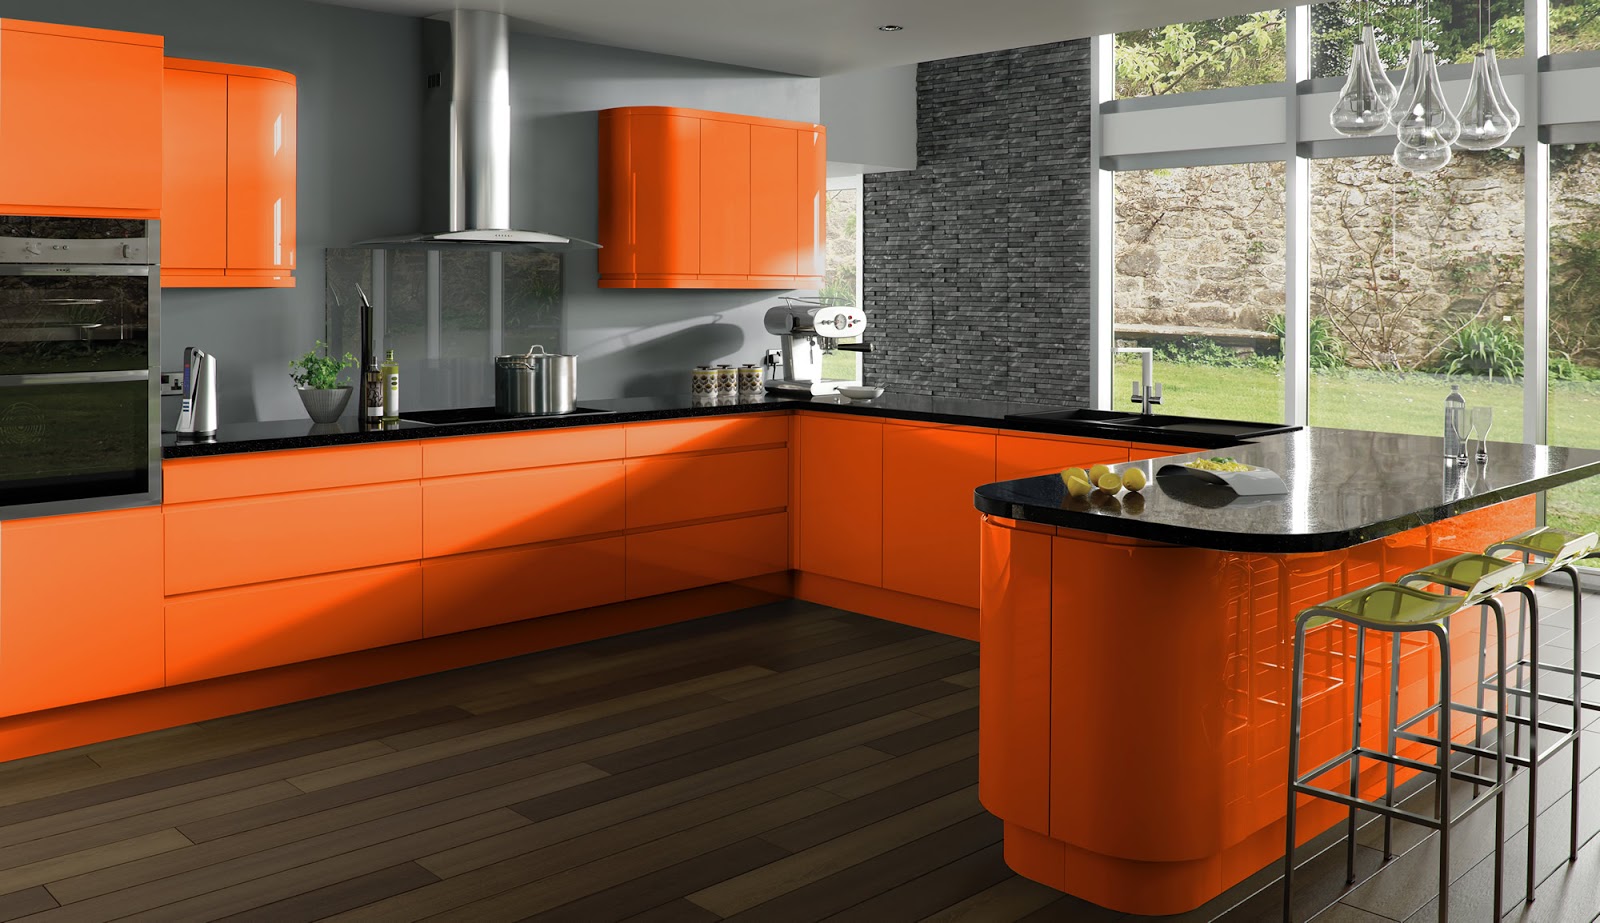  Warna Yang Sesuai Untuk Ruang Dapur Desainrumahid com